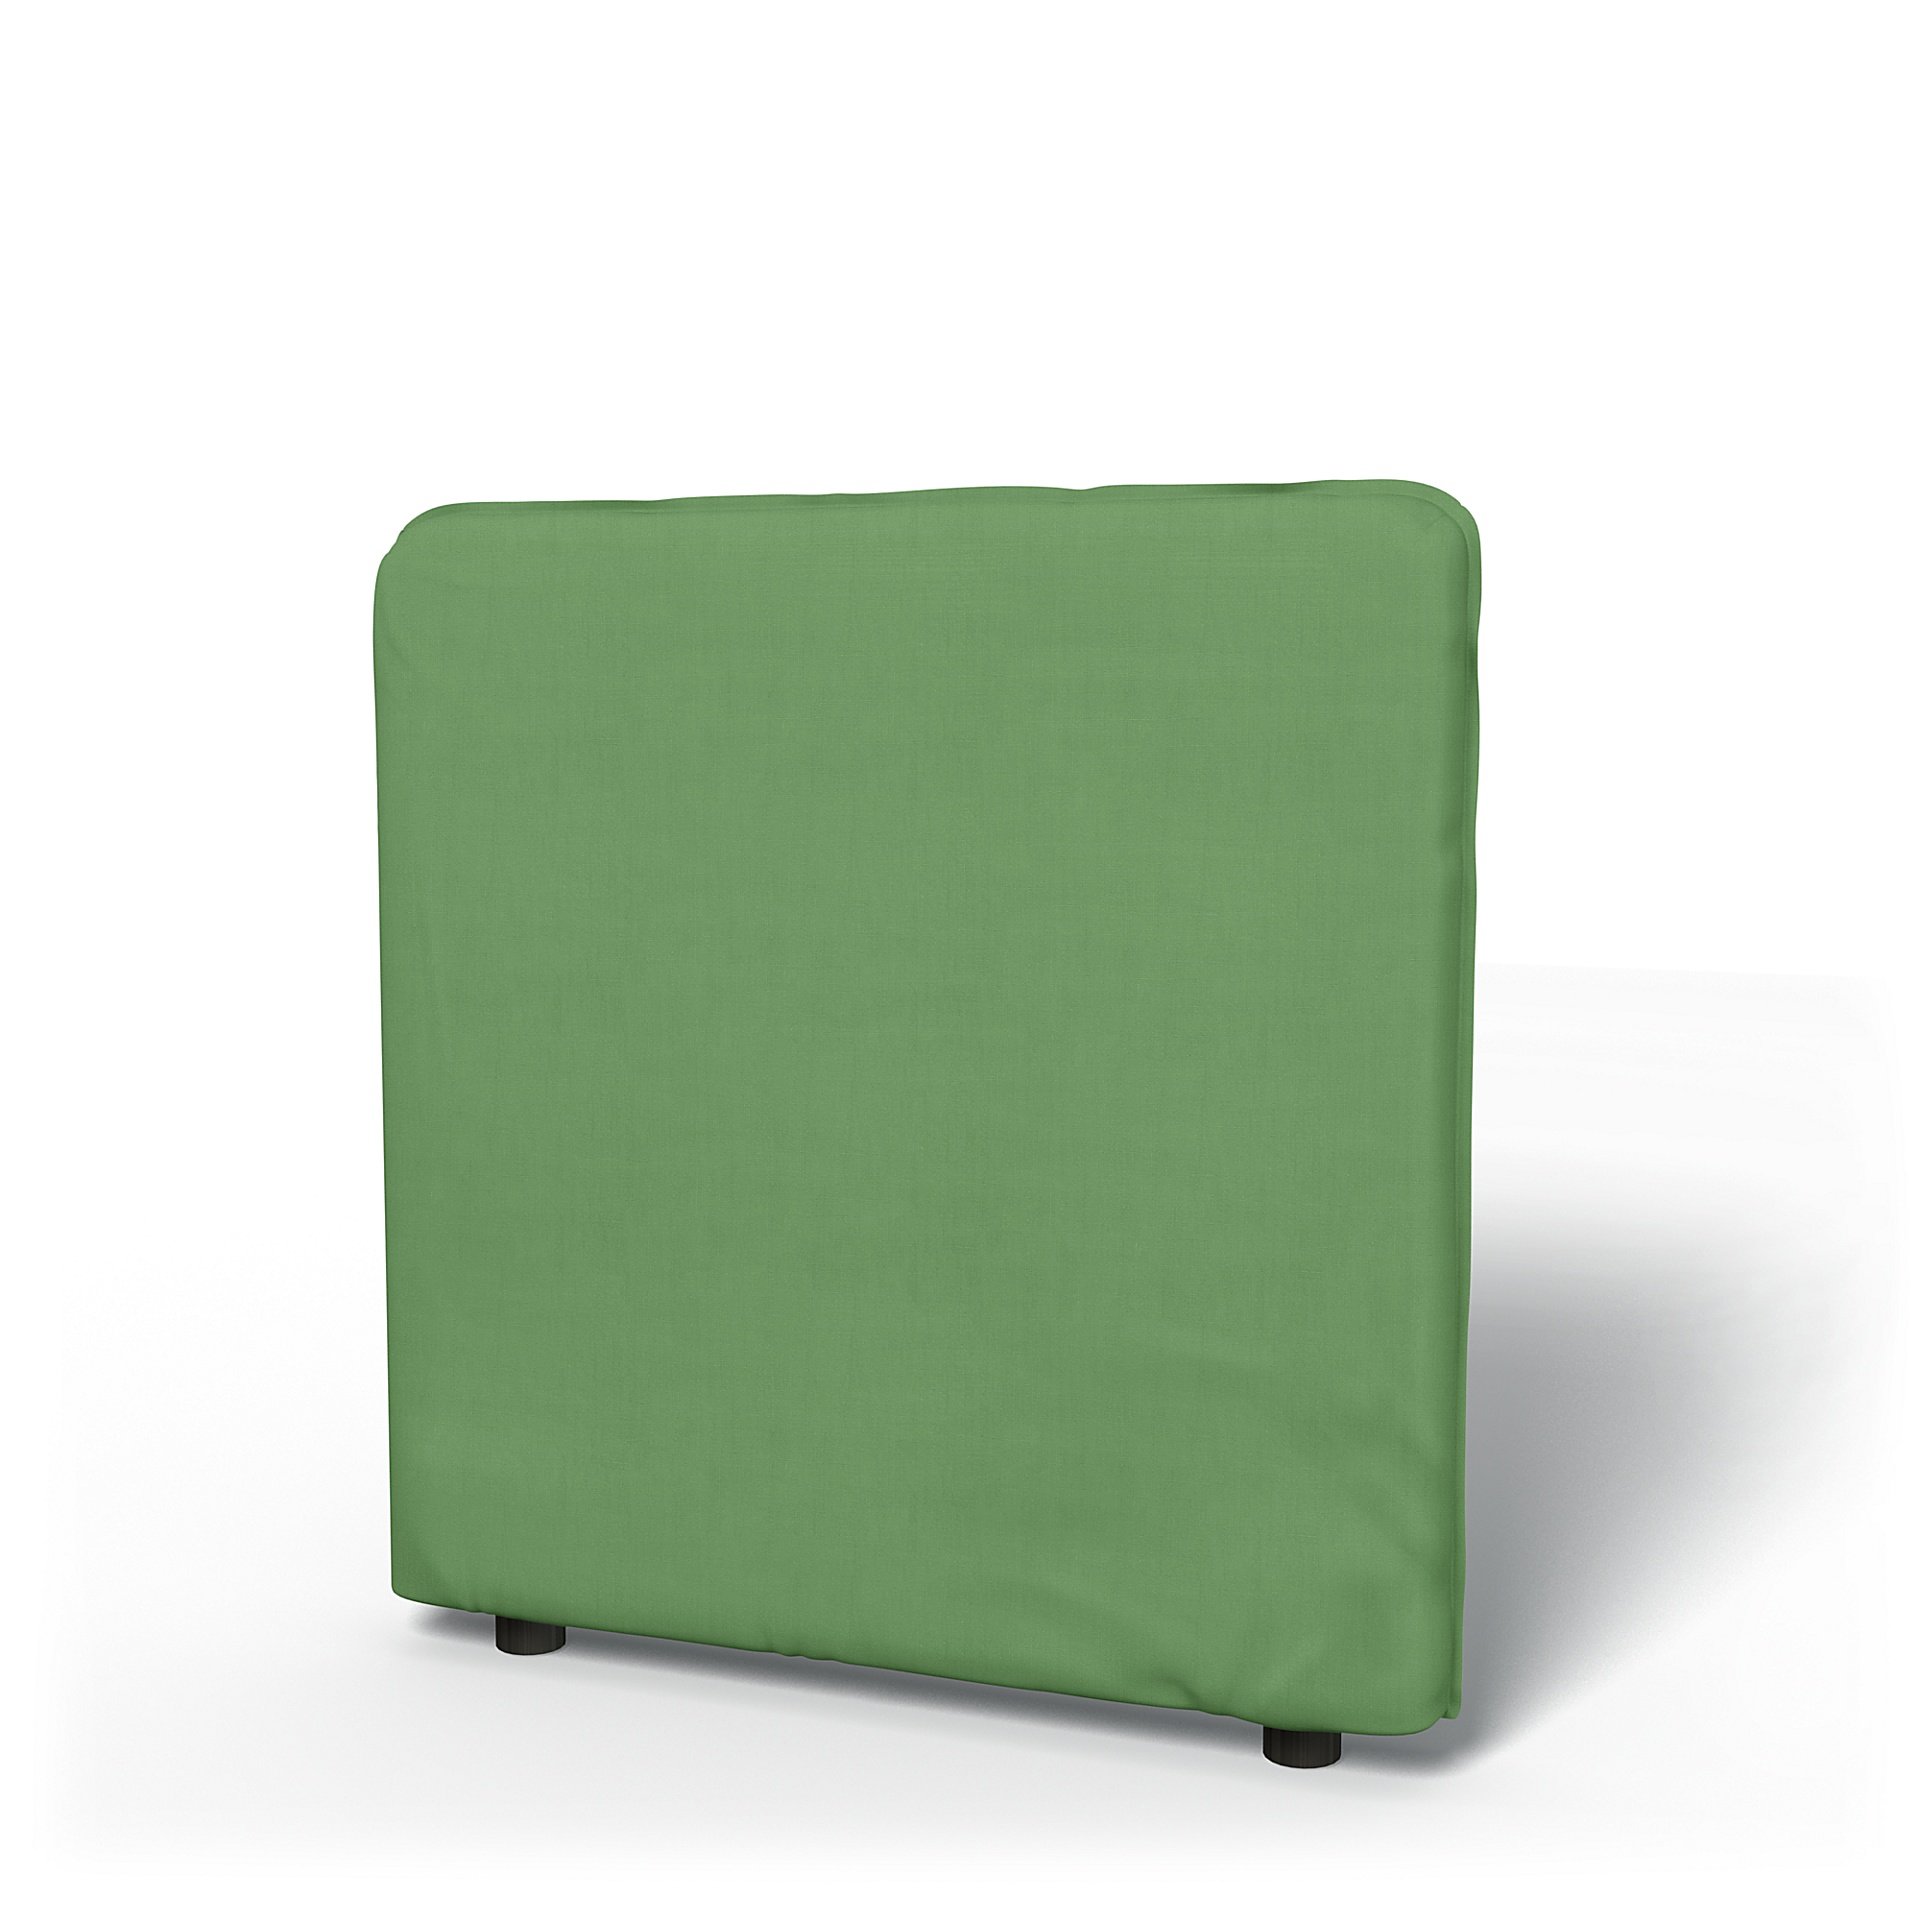 IKEA - Vallentuna Low Backrest Cover 80x80cm 32x32in, Apple Green, Linen - Bemz